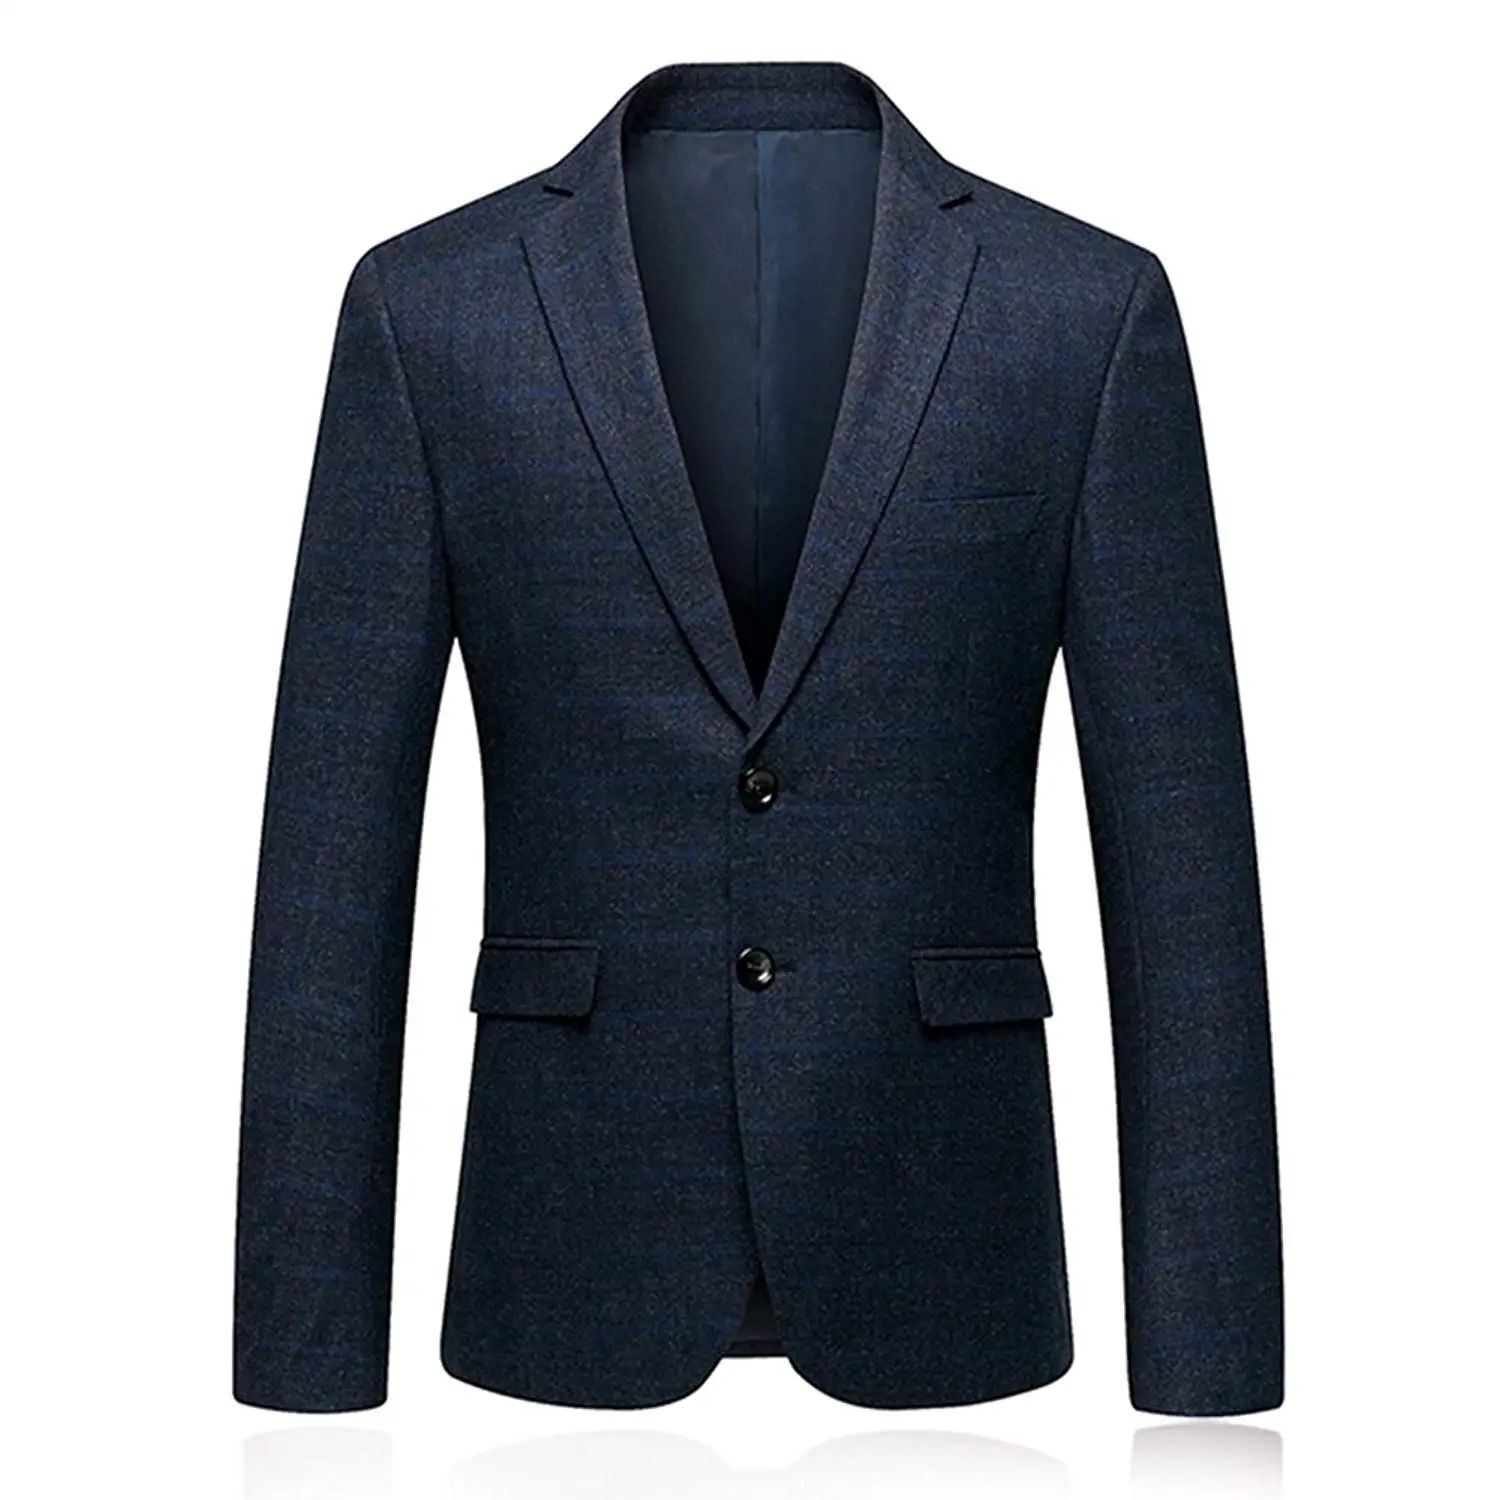 Suit Jackets BCDshop Mens Plaid Suit Jacket Slim Fit Suit Blazer Coat ...